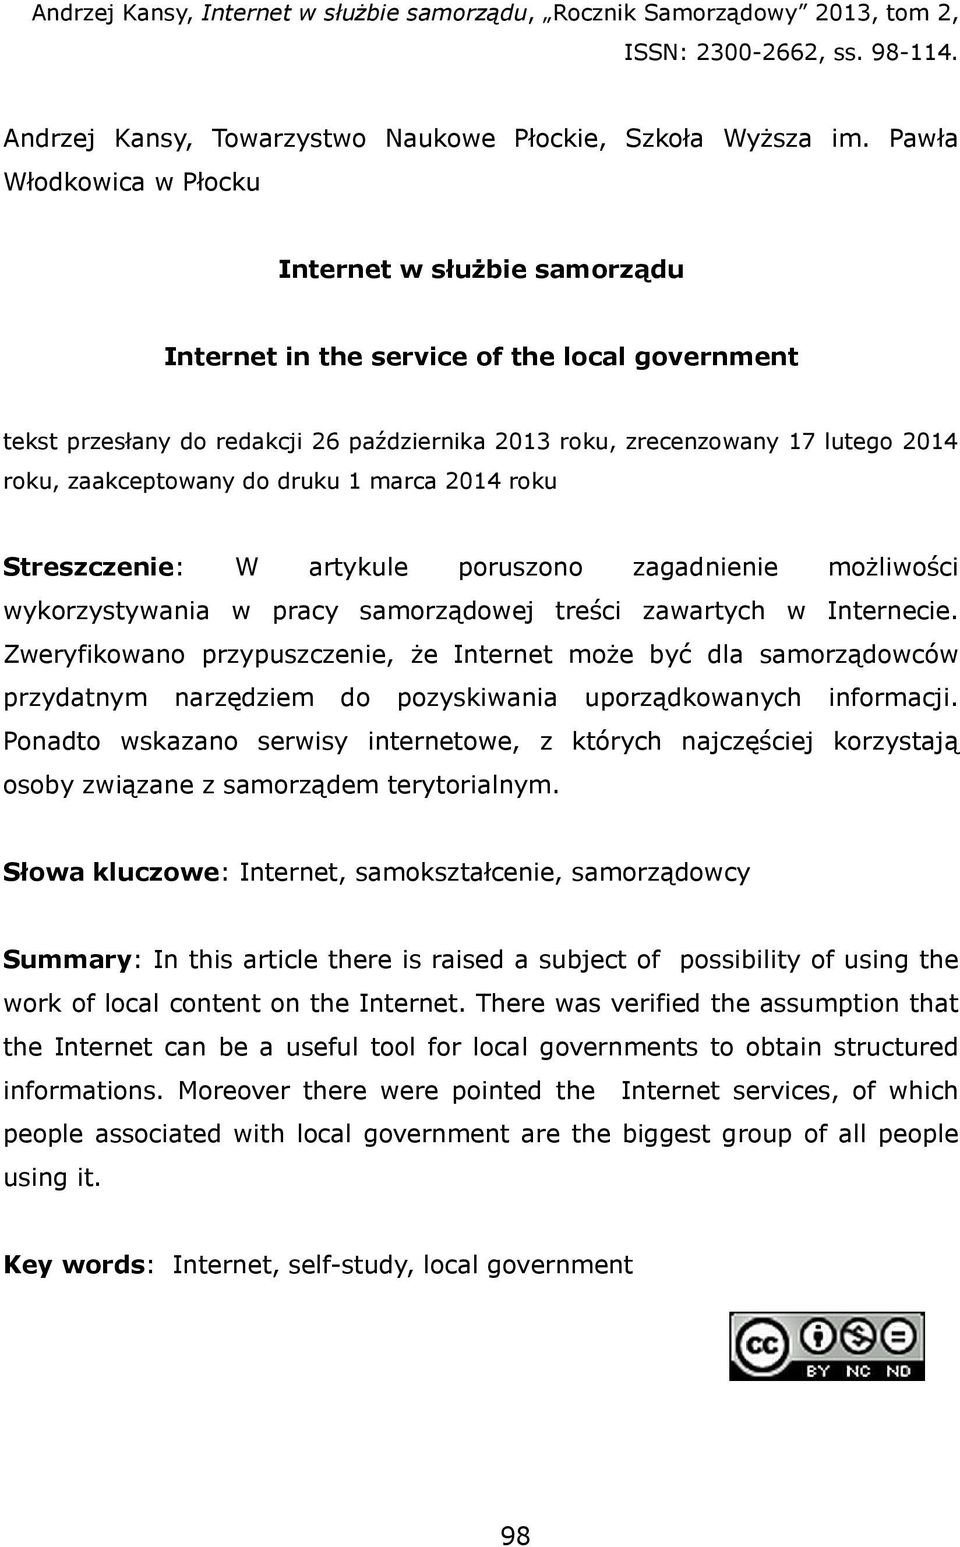 1 marca 2014 roku Streszczene: W artykule poruszono zagadnene możlośc ykorzystyana pracy samorządoej treśc zaartych Internece.